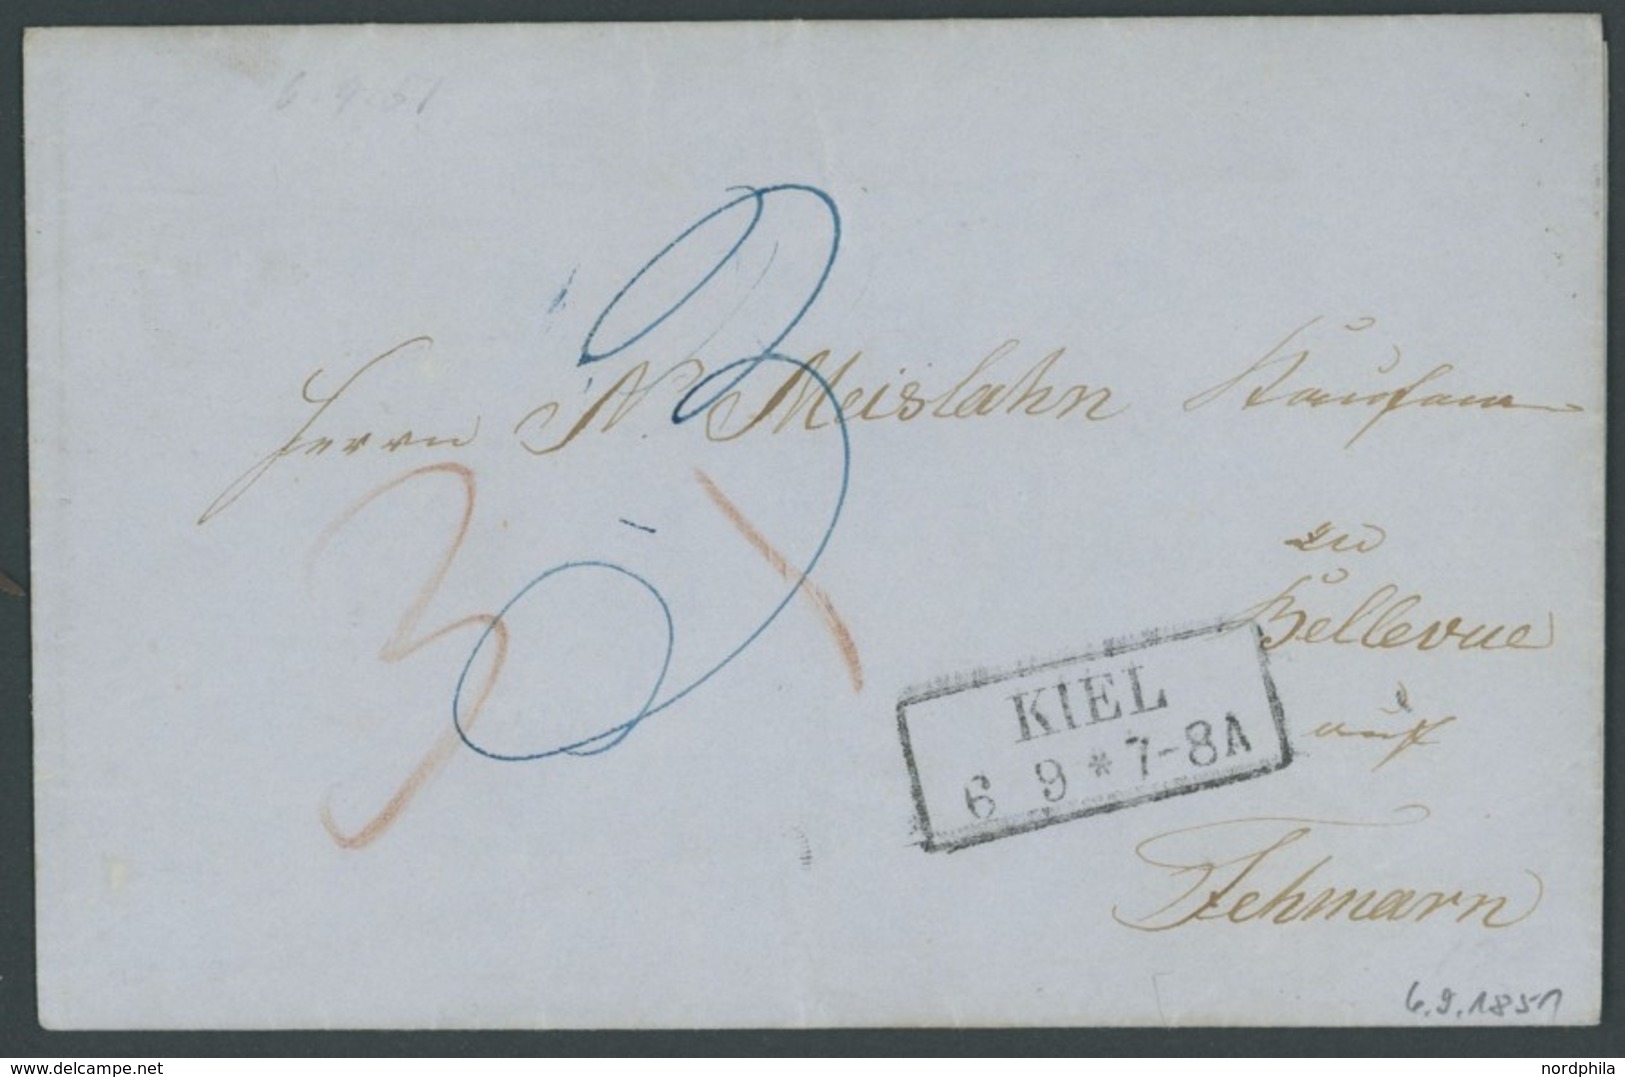 SCHLESWIG-HOLSTEIN 1851, KIEL, R2 Auf Briefhülle Nach Fehmarn, Taxvermerke In Rot Und Blau, Kabinett - Vorphilatelie